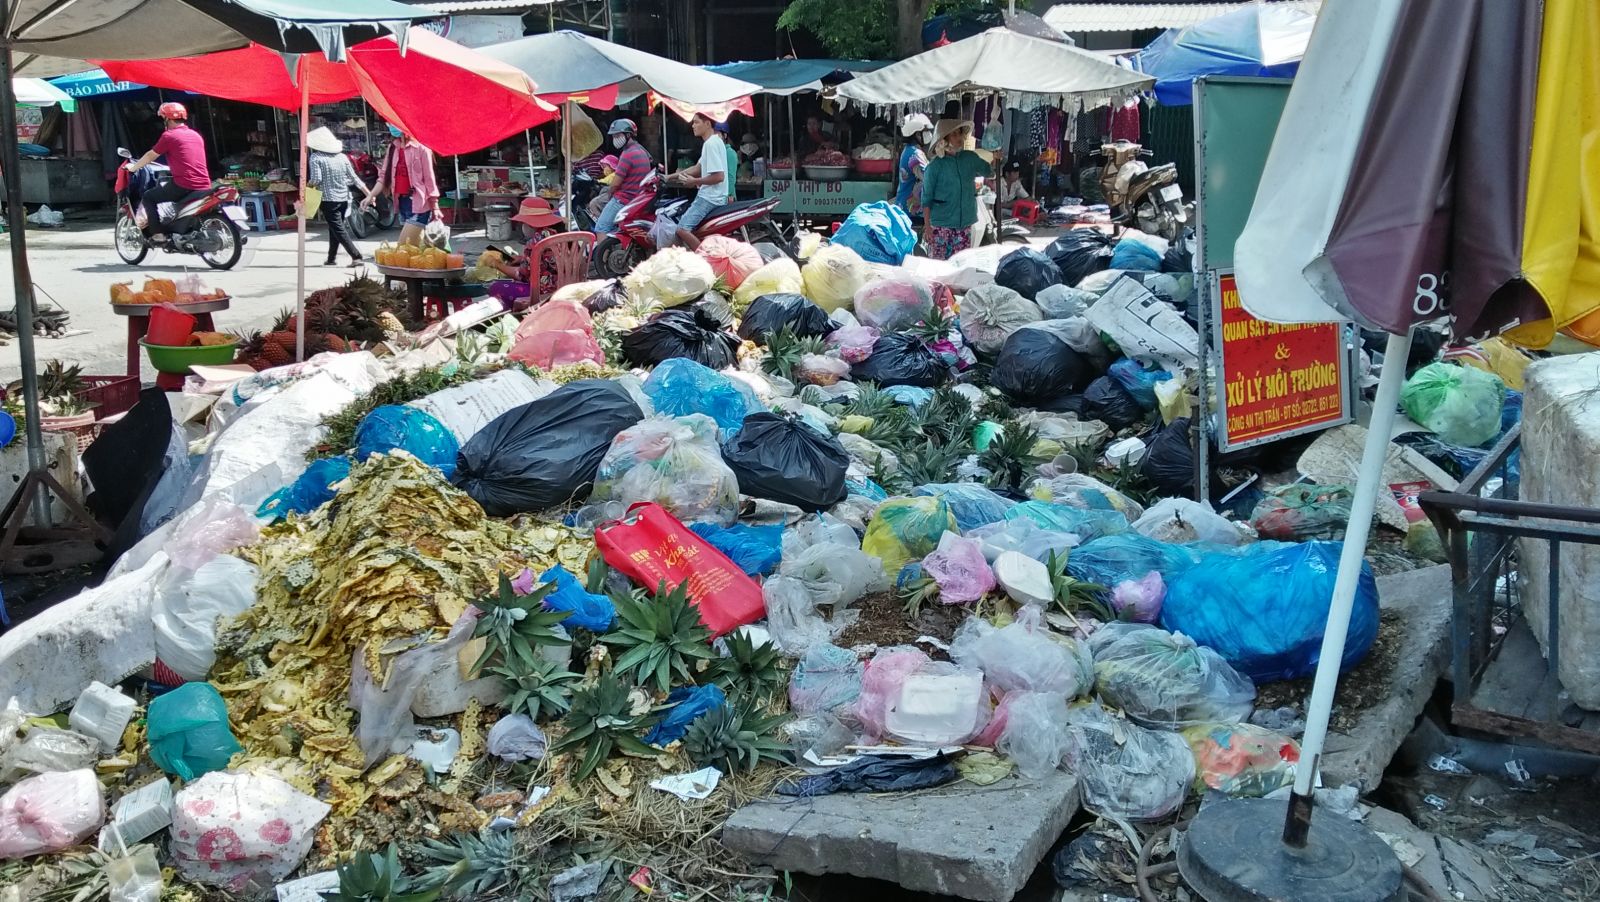 Một số địa điểm bãi đất trống, lề đường hay ở gần chợ vẫn có những đống rác tự phát gây ô nhiễm